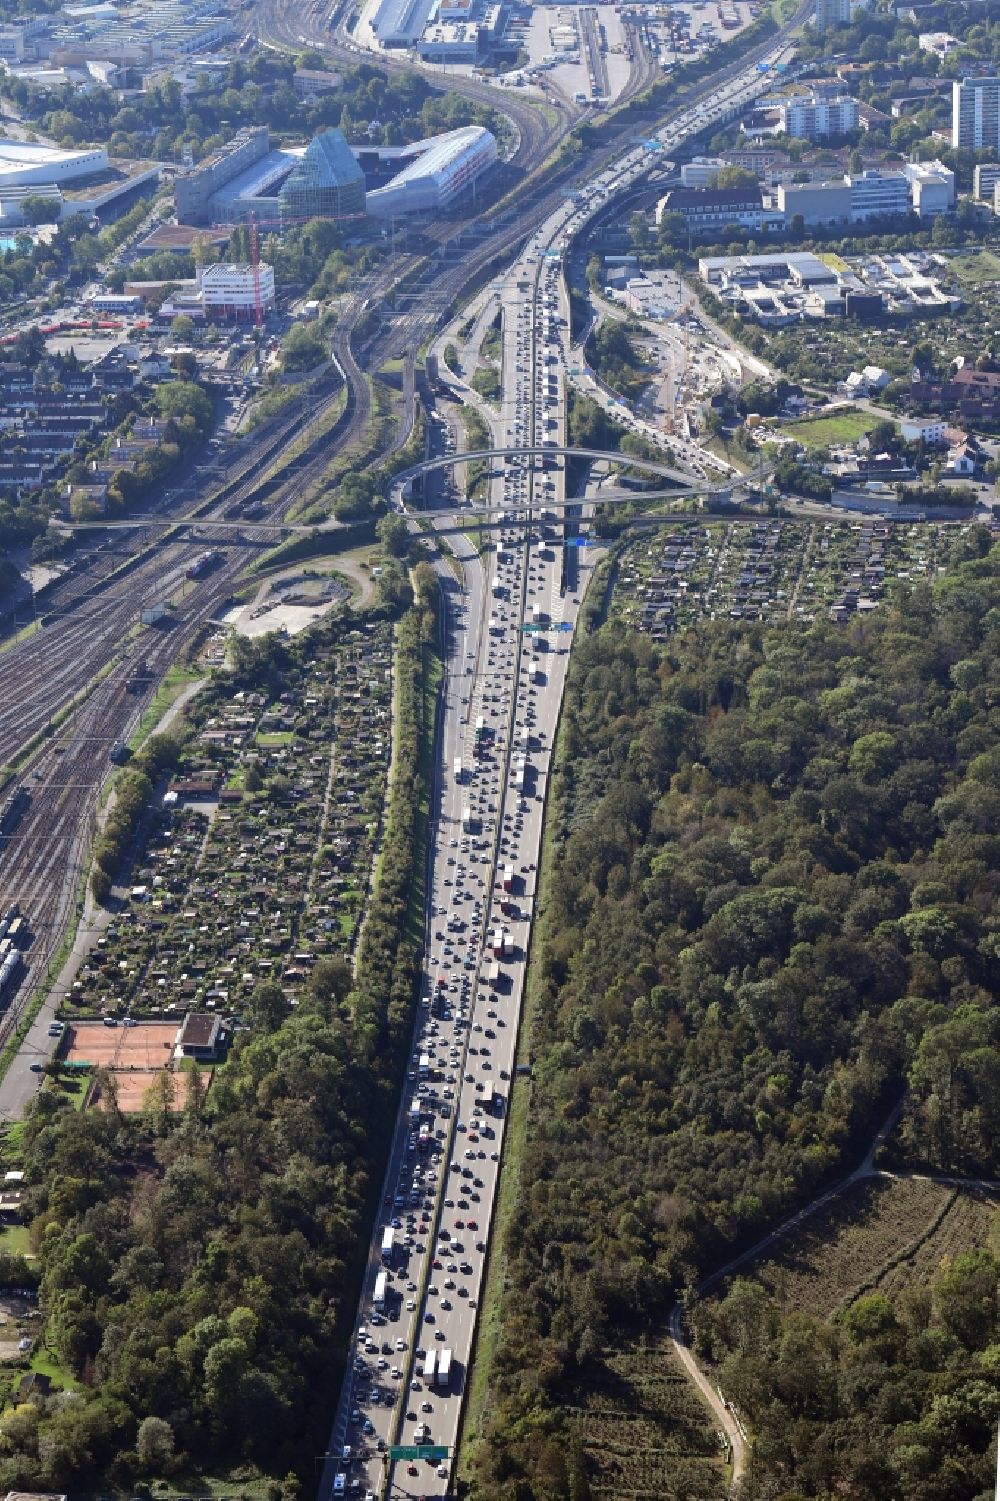 Luftaufnahme Muttenz - Autobahn- Stau im Streckenverlauf der schweizer Autobahn A2 / A3 in Muttenz im Kanton Basel-Landschaft, Schweiz